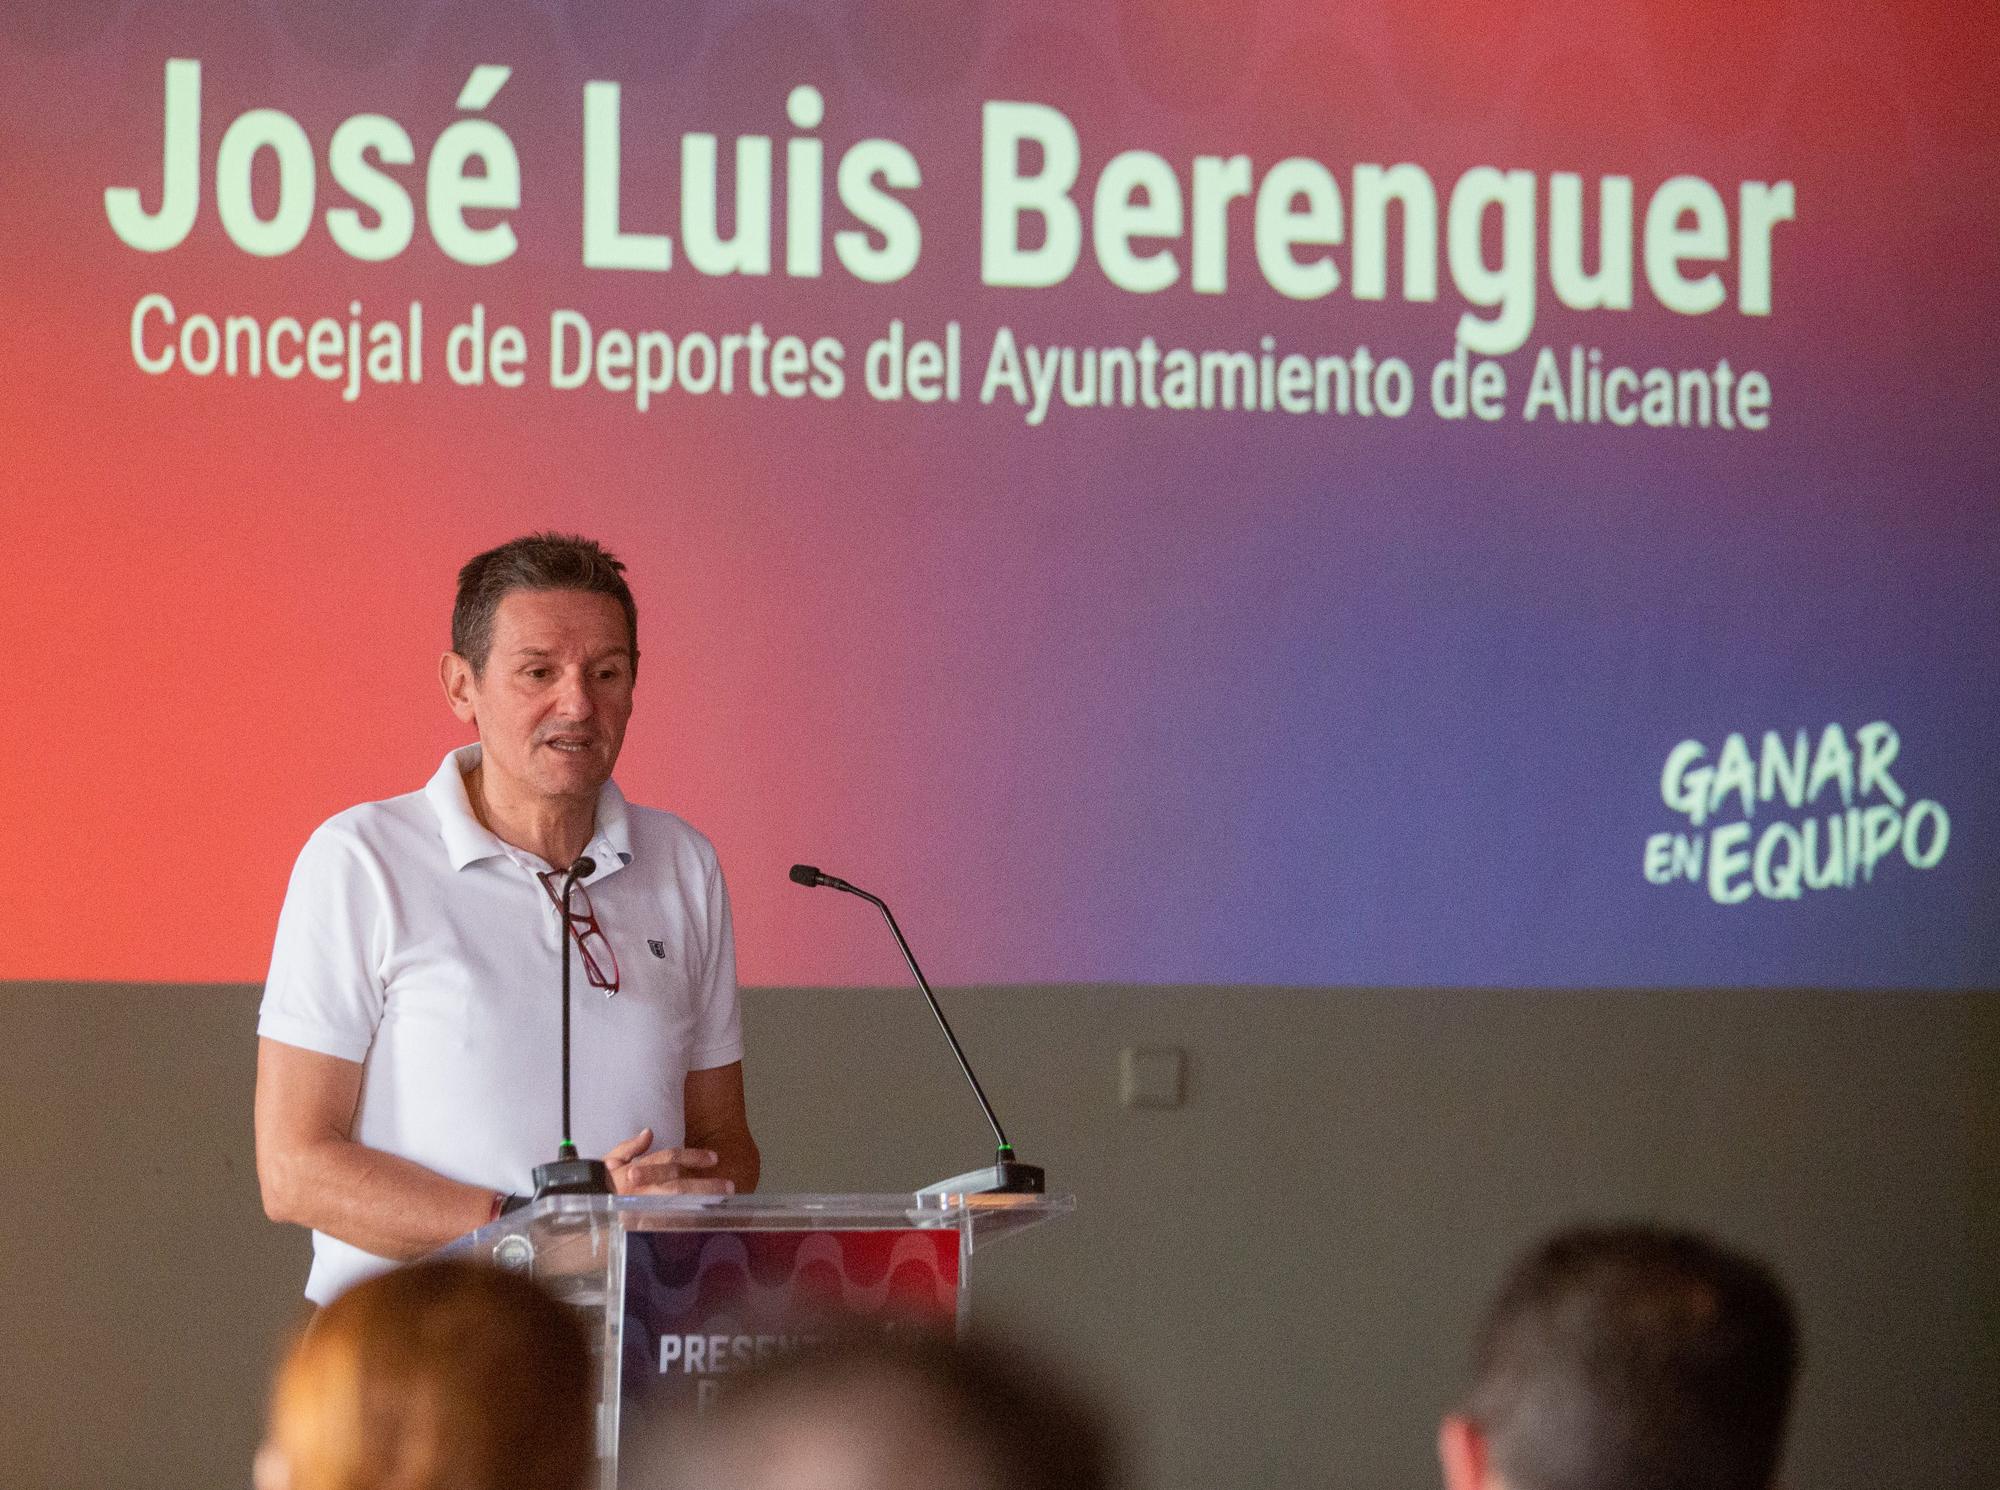 José Luis Berenguer, concejal de Deportes